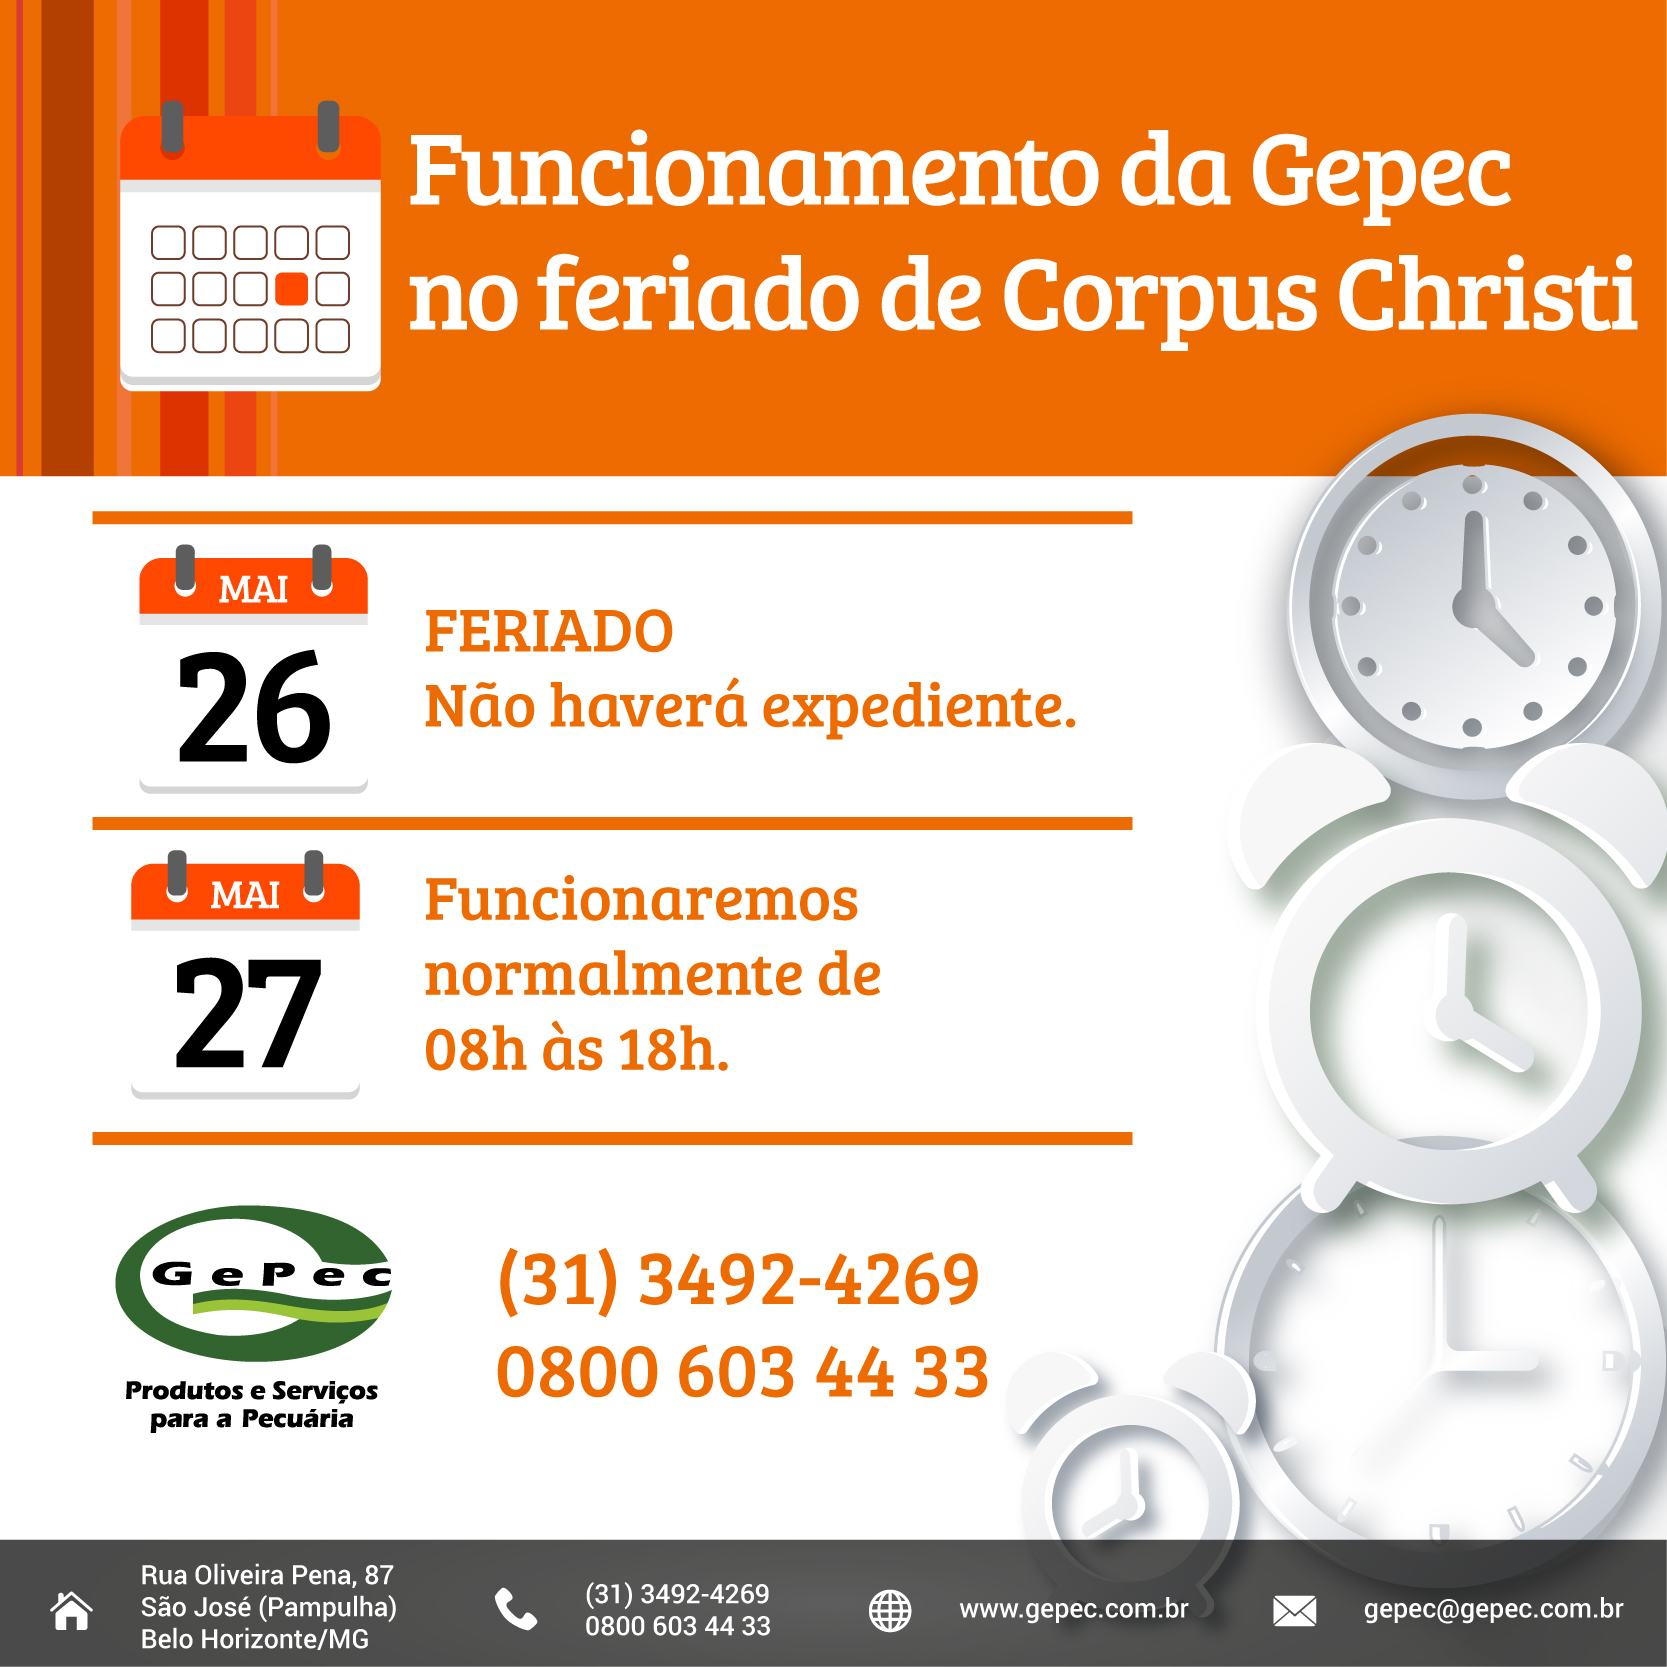 Funcionamento da Gepec no feriado de Corpus Christi